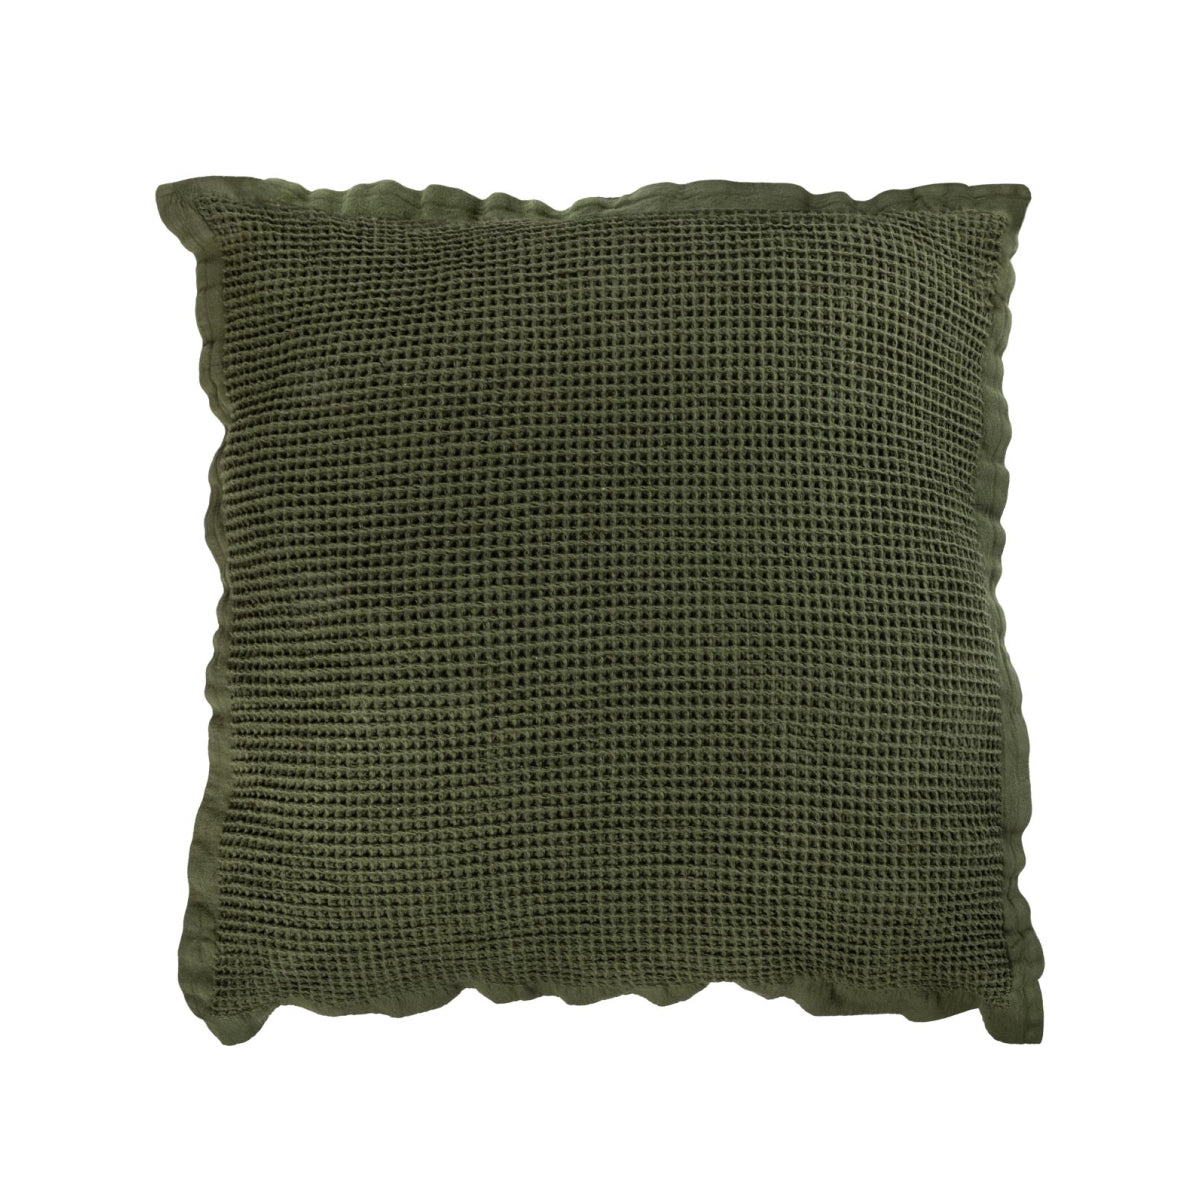 Nuppu cushion cover, green